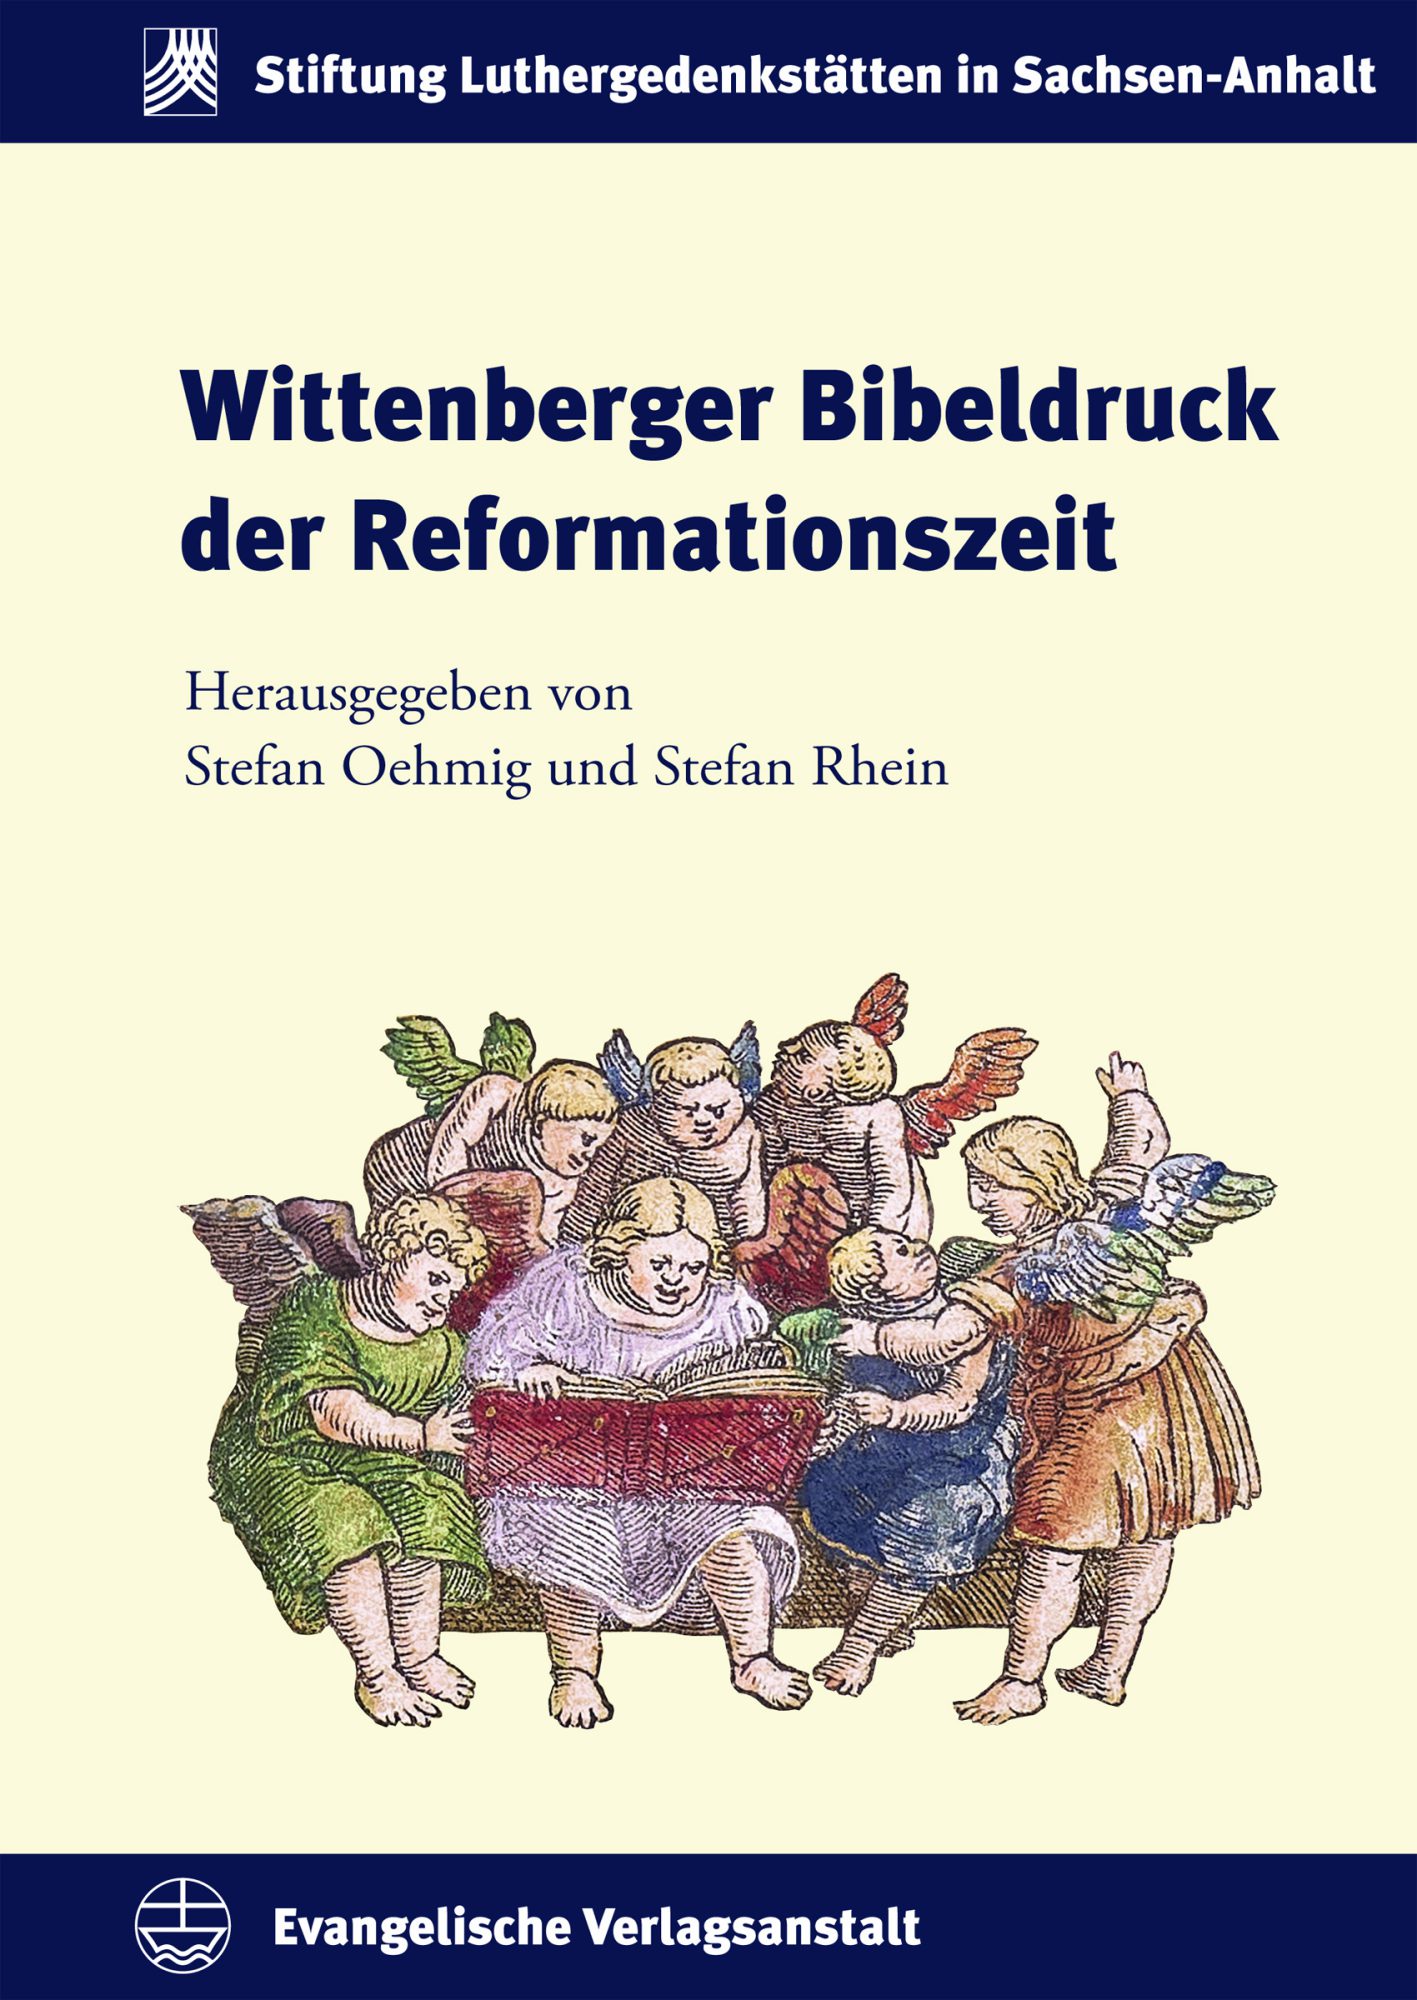 Wittenberger Bibeldruck der Reformationszeit (Wittenberg Bible Printing of the Reformation Era)